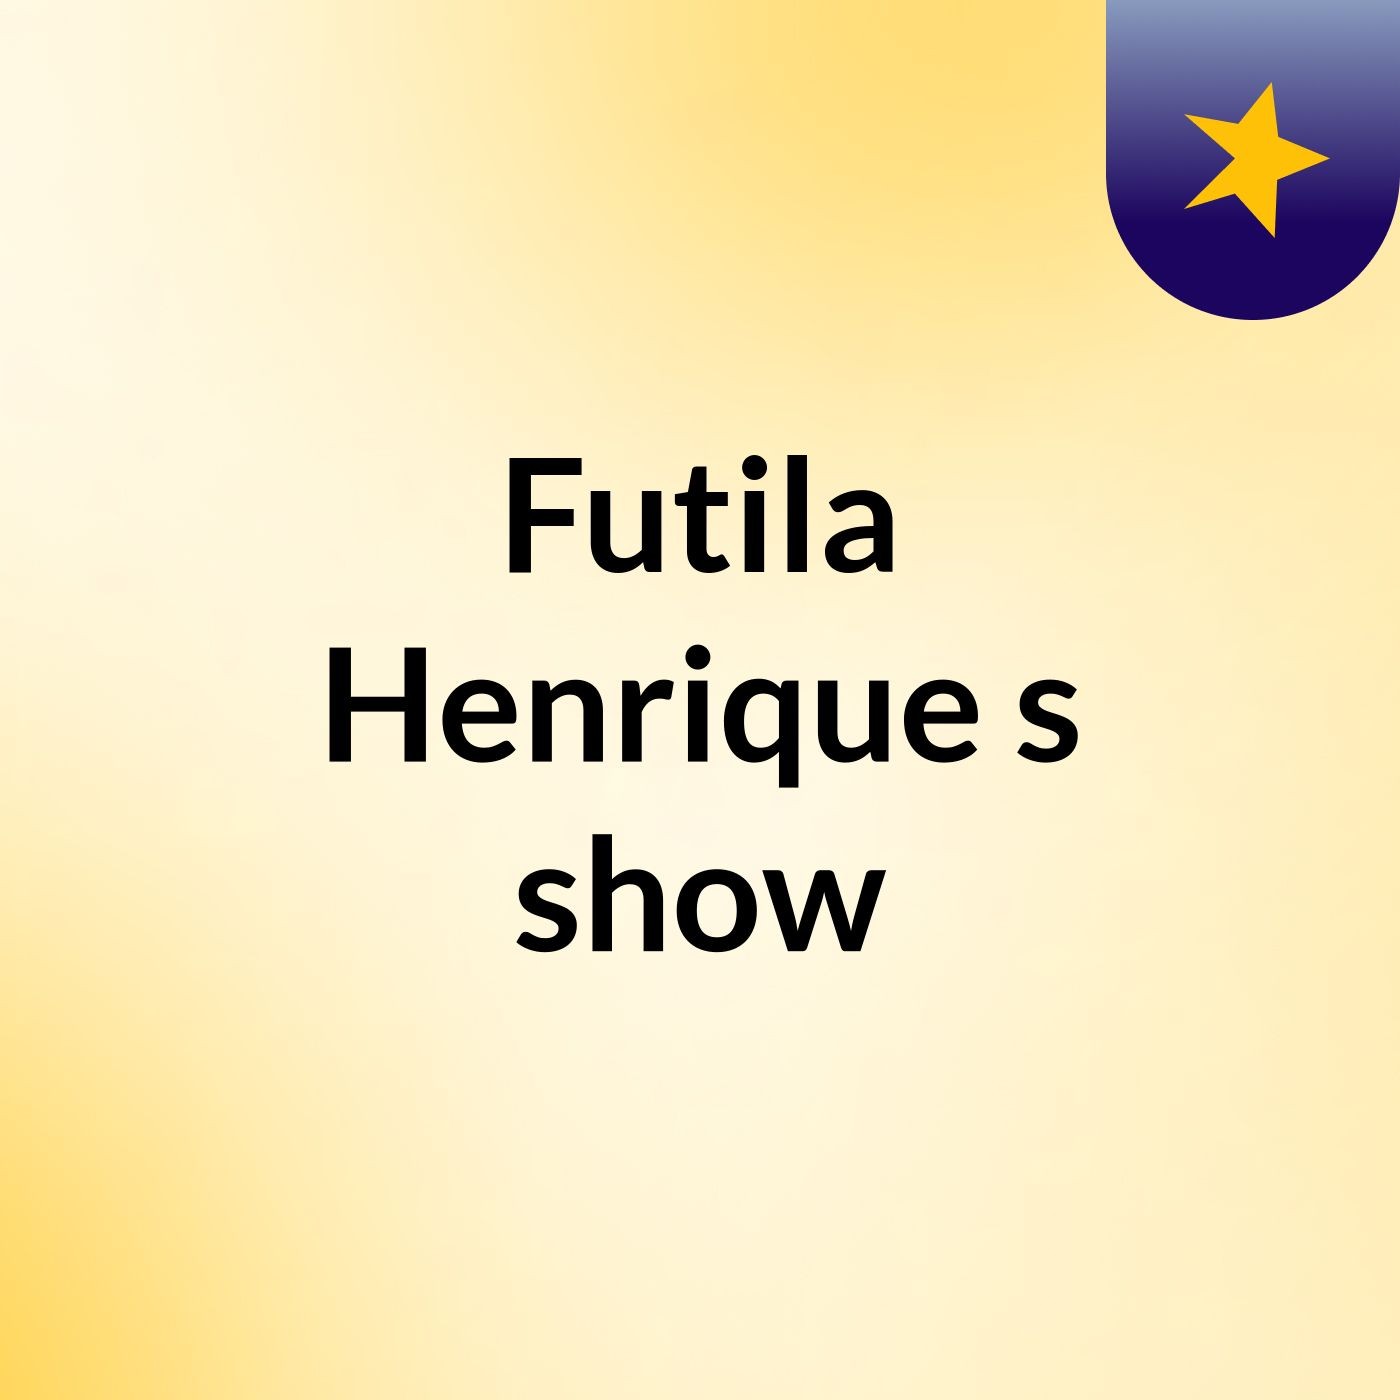 Futila Henrique's show